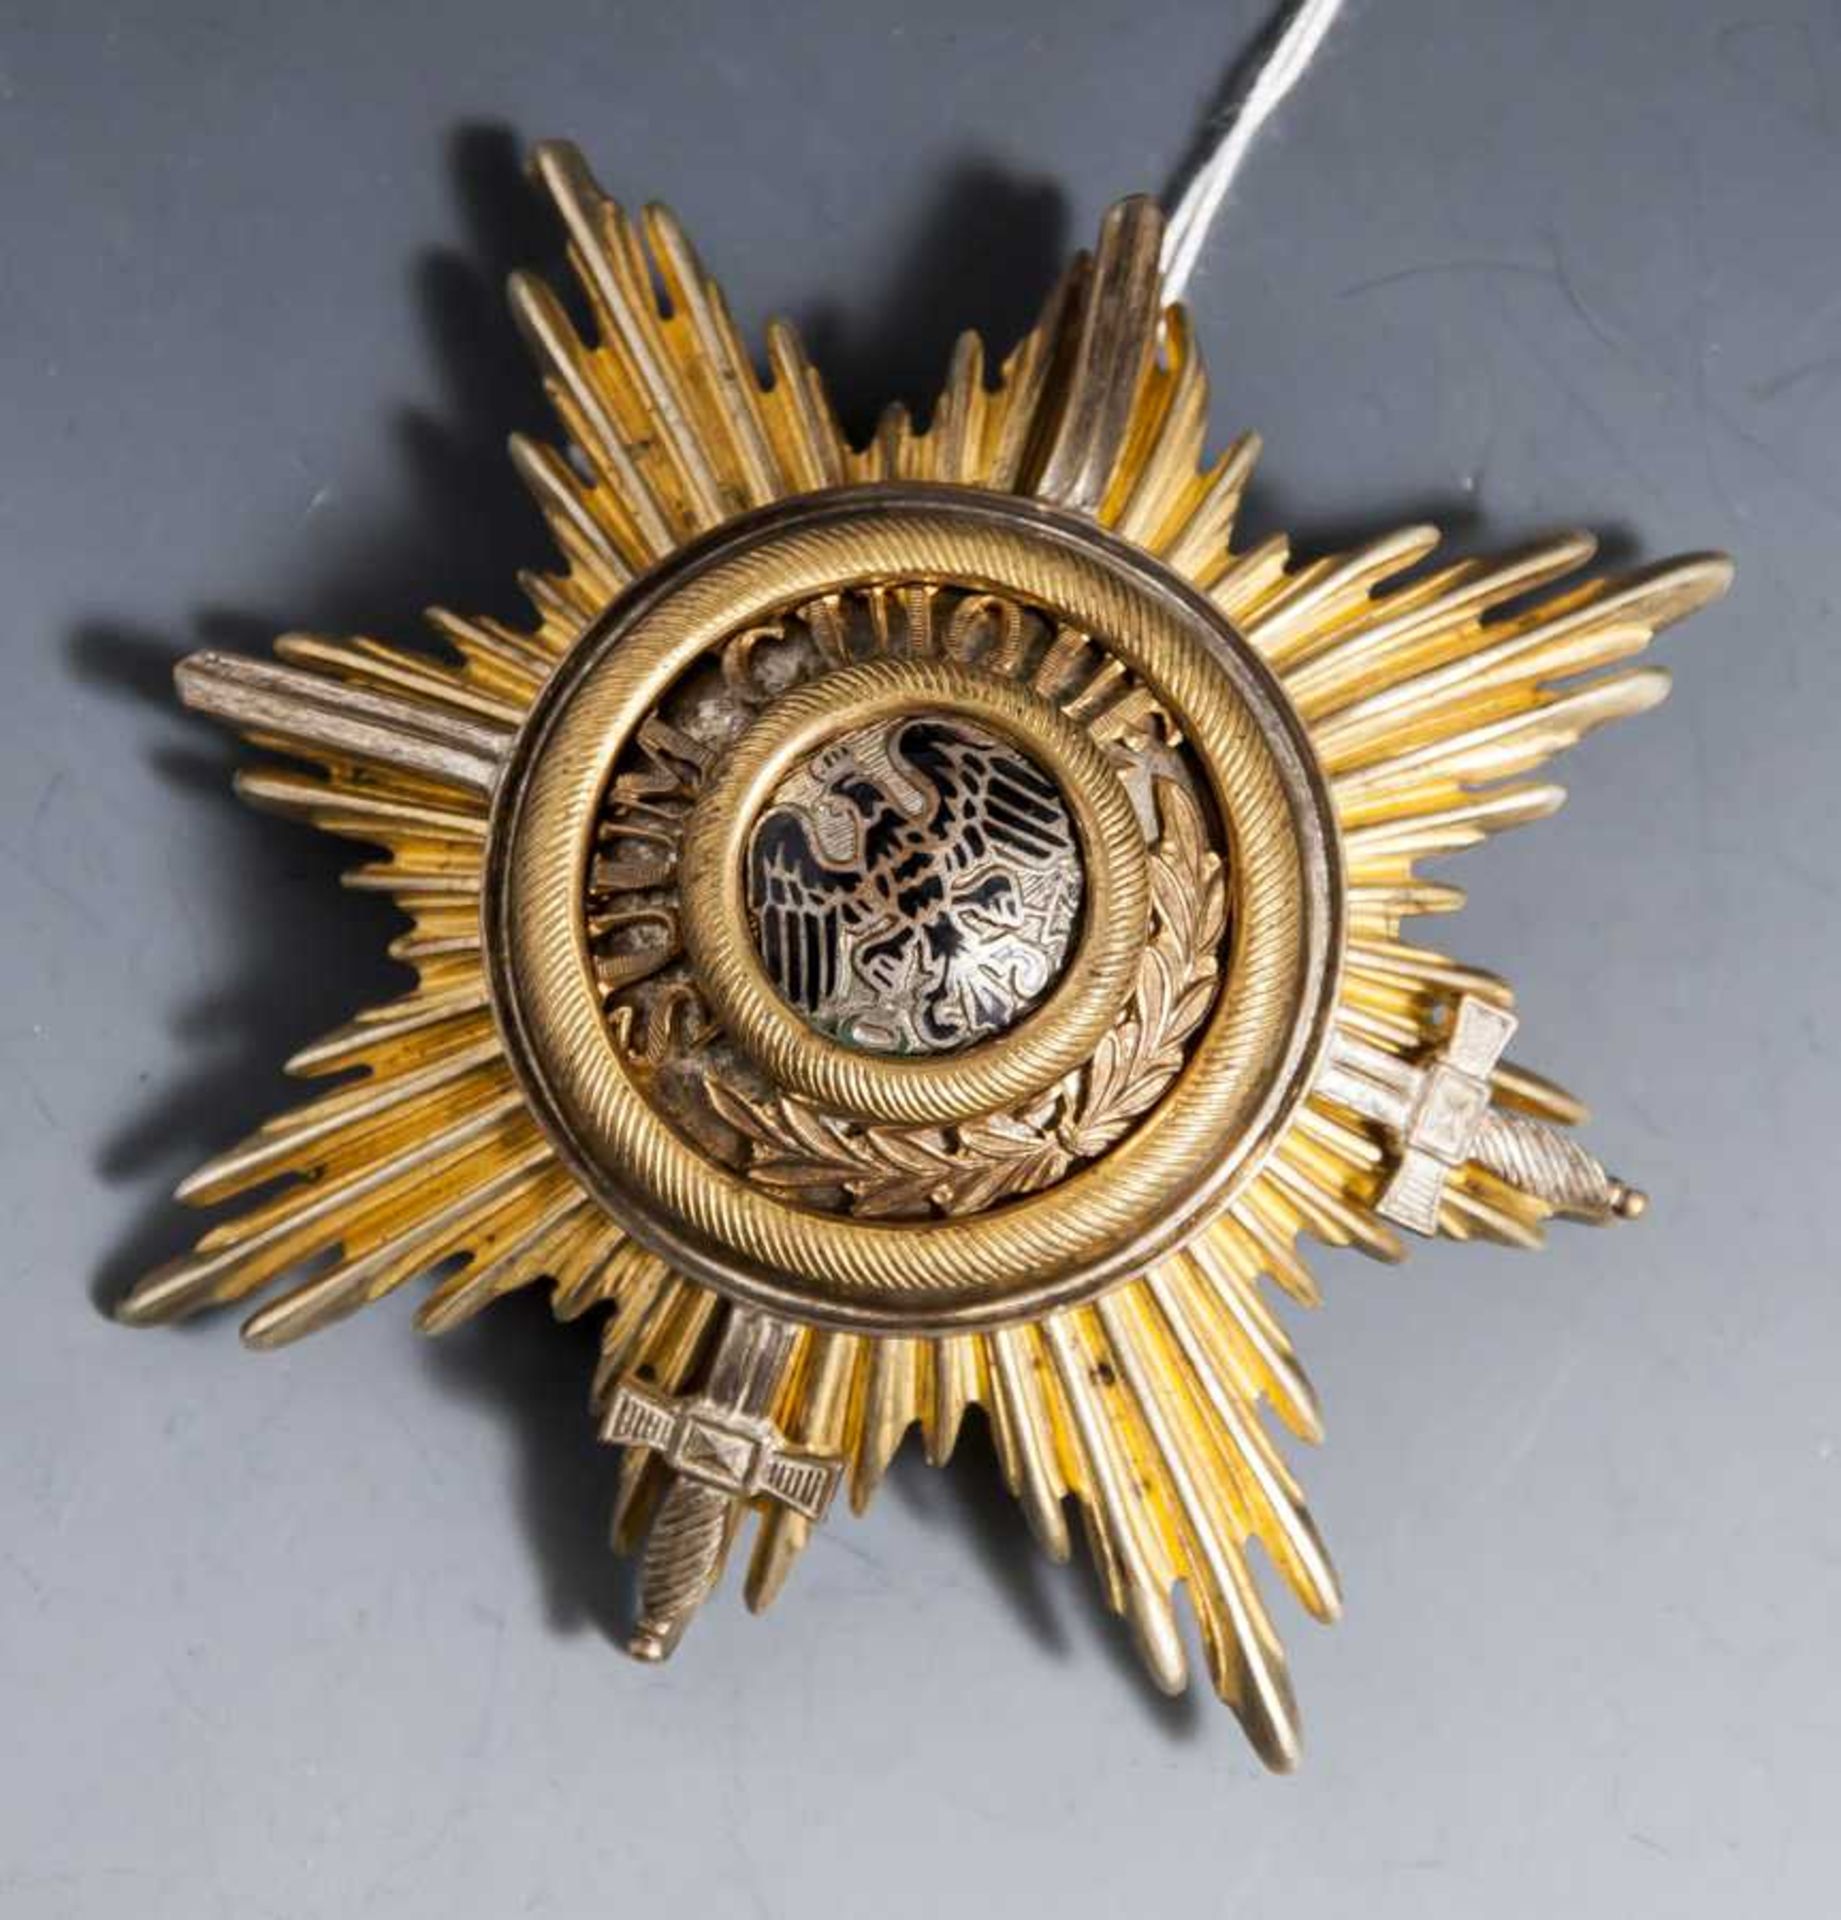 Auszeichnung "Der Stern von Malplaquet", gestiftet von Oberst Freiherr von Diebitsch,Kommandeur